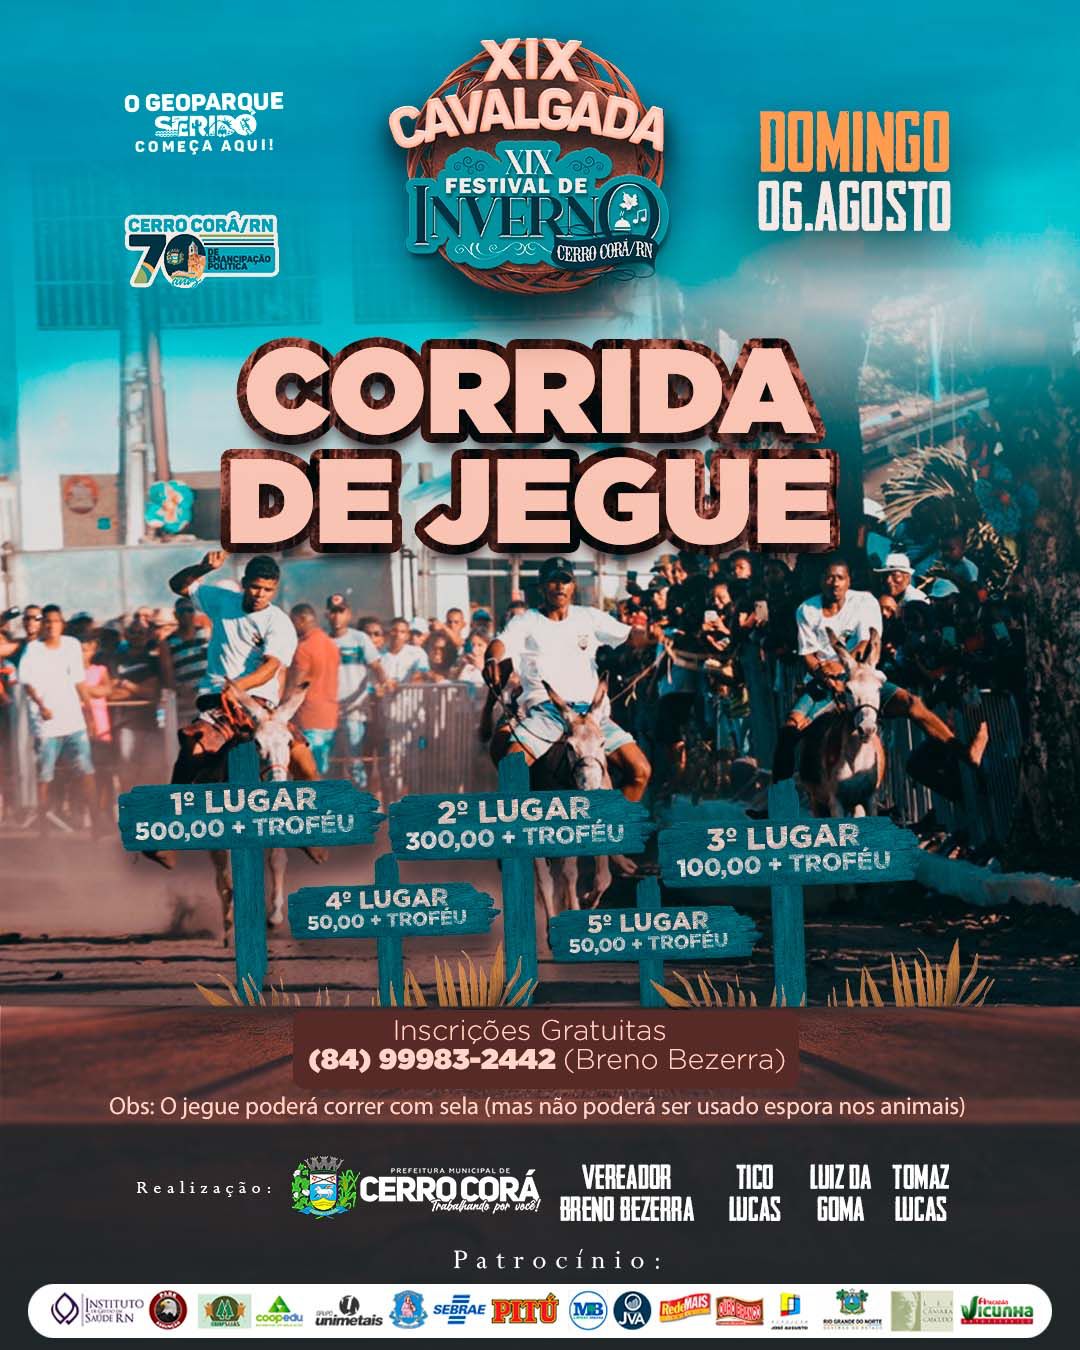 Corrida de Jegue e Cavalgada também serão atrações no XIX Festival de Inverno em Cerro Corá RN